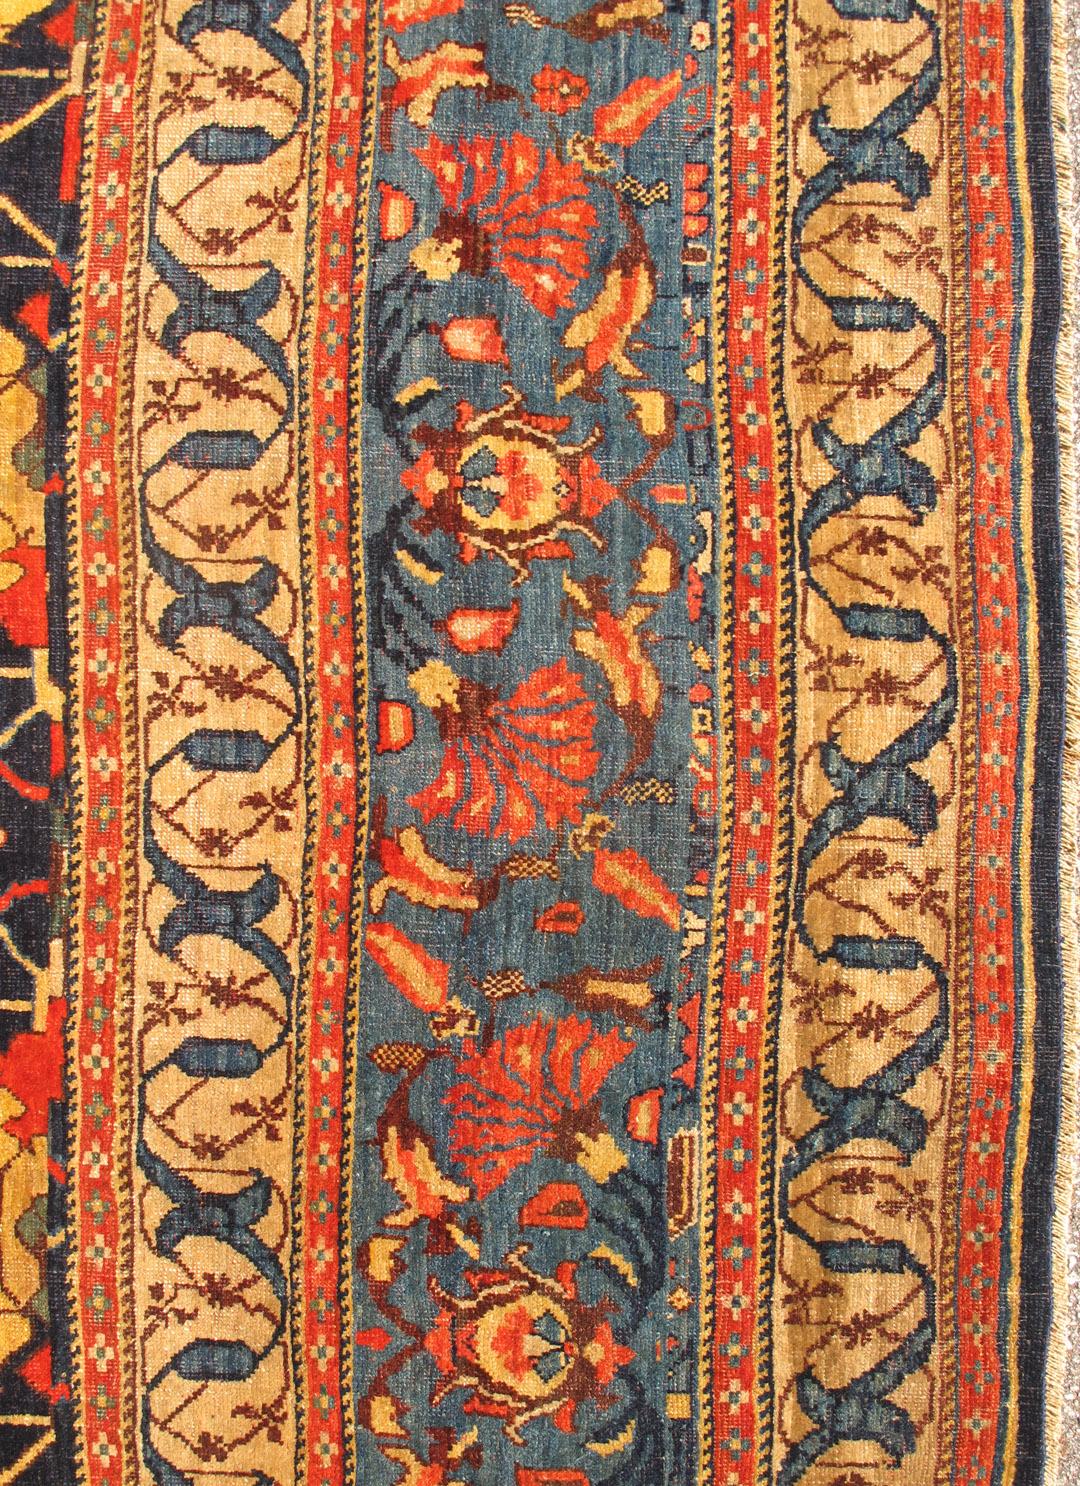 Very large Antique Persian Bidjar, Keivan Woven Arts- rug/ F-0402, Large Persian rug, Garous design Bidjar, Large Bidjar, 

Measures: 13'2 x 25'8 

This magnificent late 19th century Persian large Bidjar brilliantly incorporates breathtaking